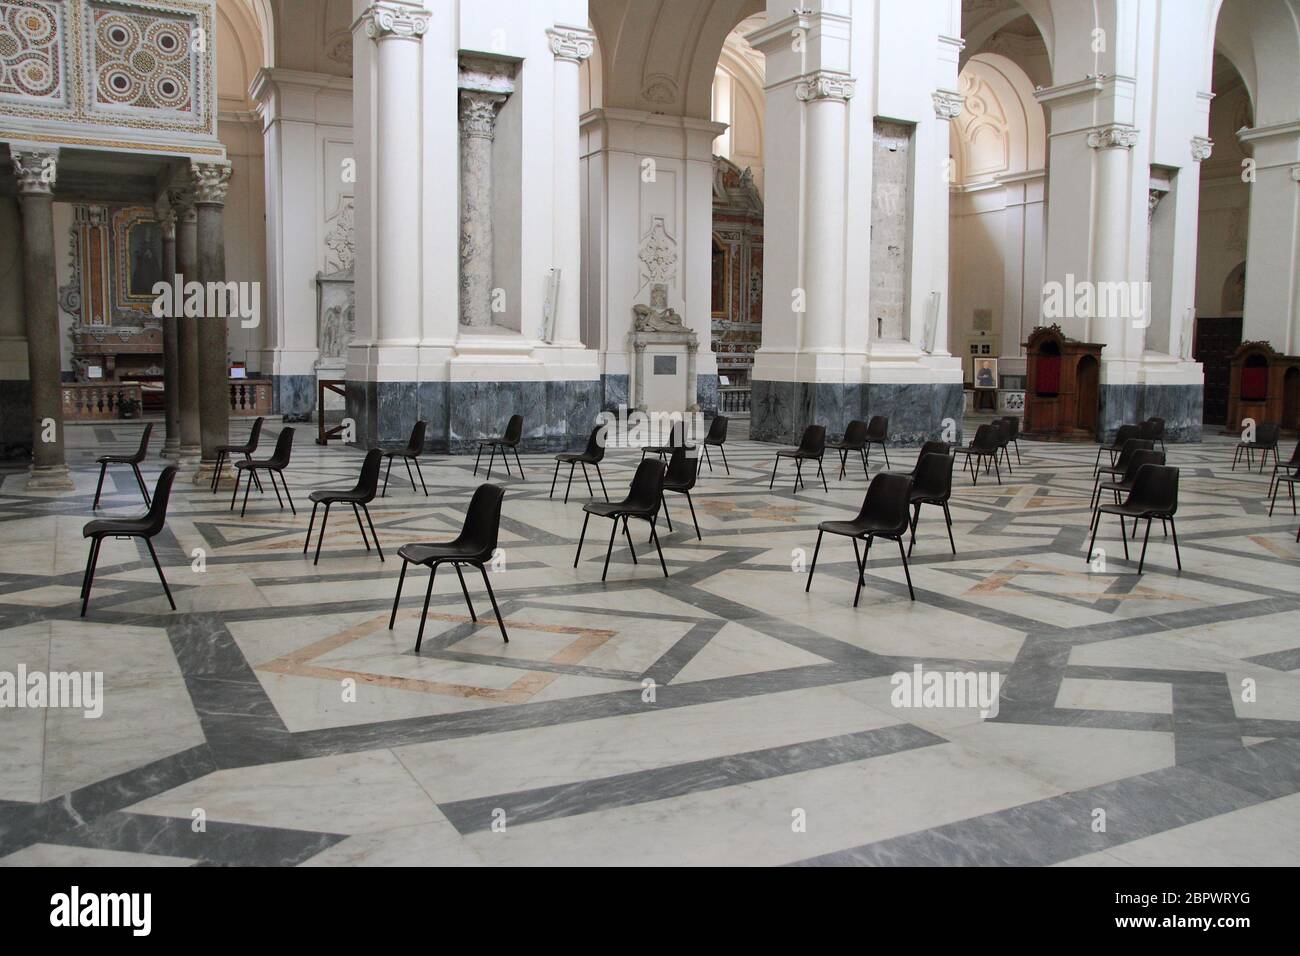 Nella navata centrale del Duomo le sedie sono disposte secondo le regole che prevedono la distanza tra le persone Foto Stock